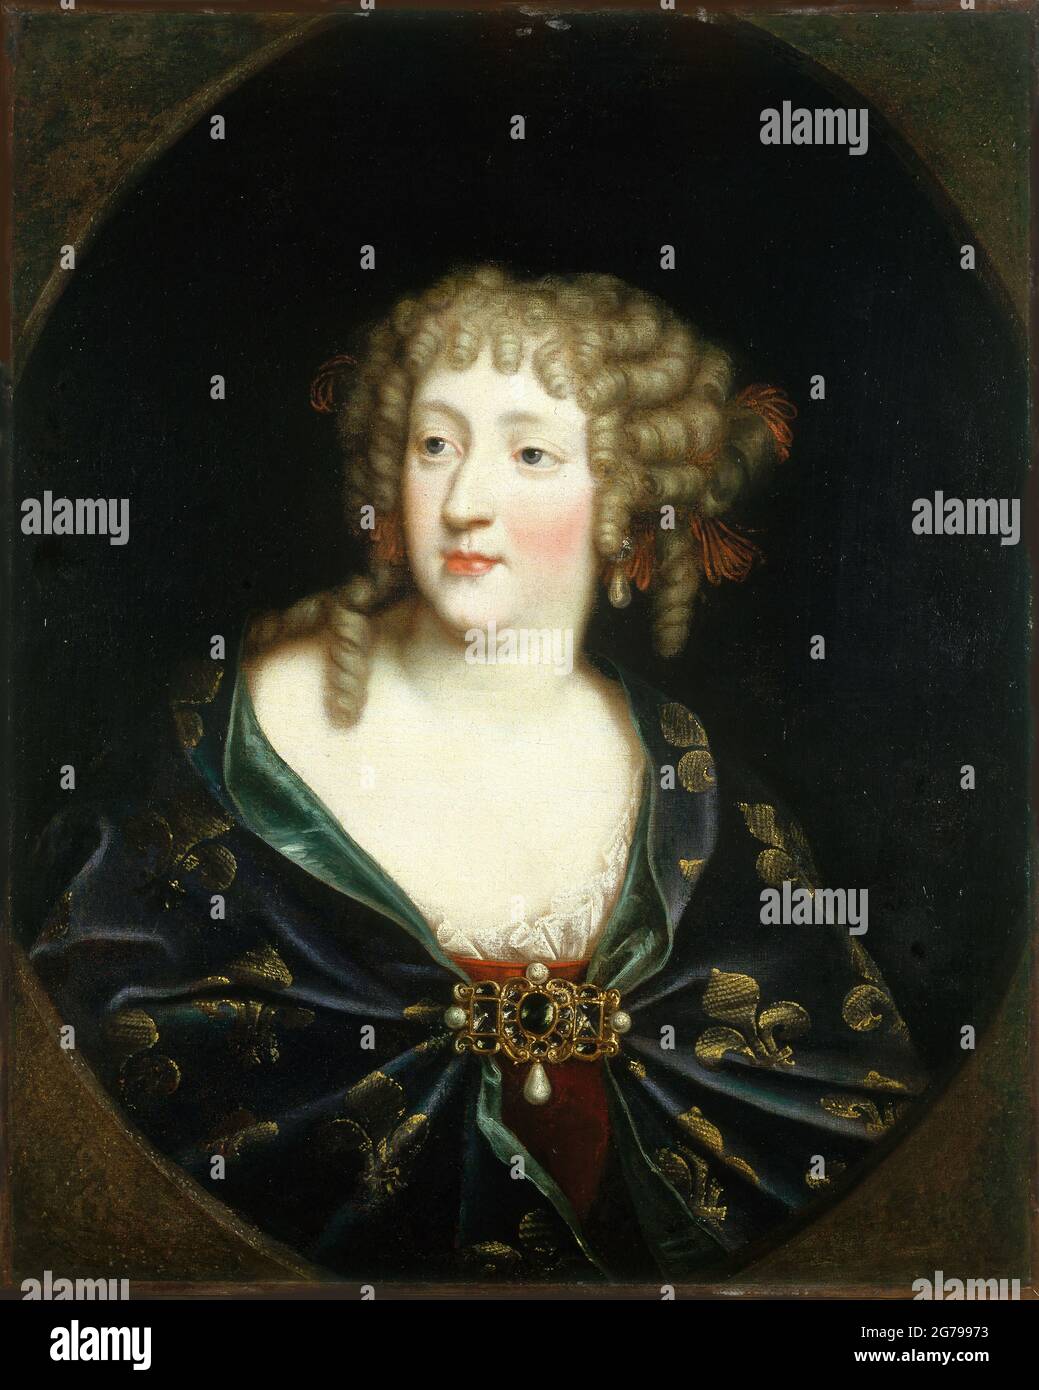 Porträt von Maria Theresia von Spanien (1638-1683), Königin von Frankreich. Museum: Musée Carnavalet, Paris. Autor: ANONYM. Stockfoto